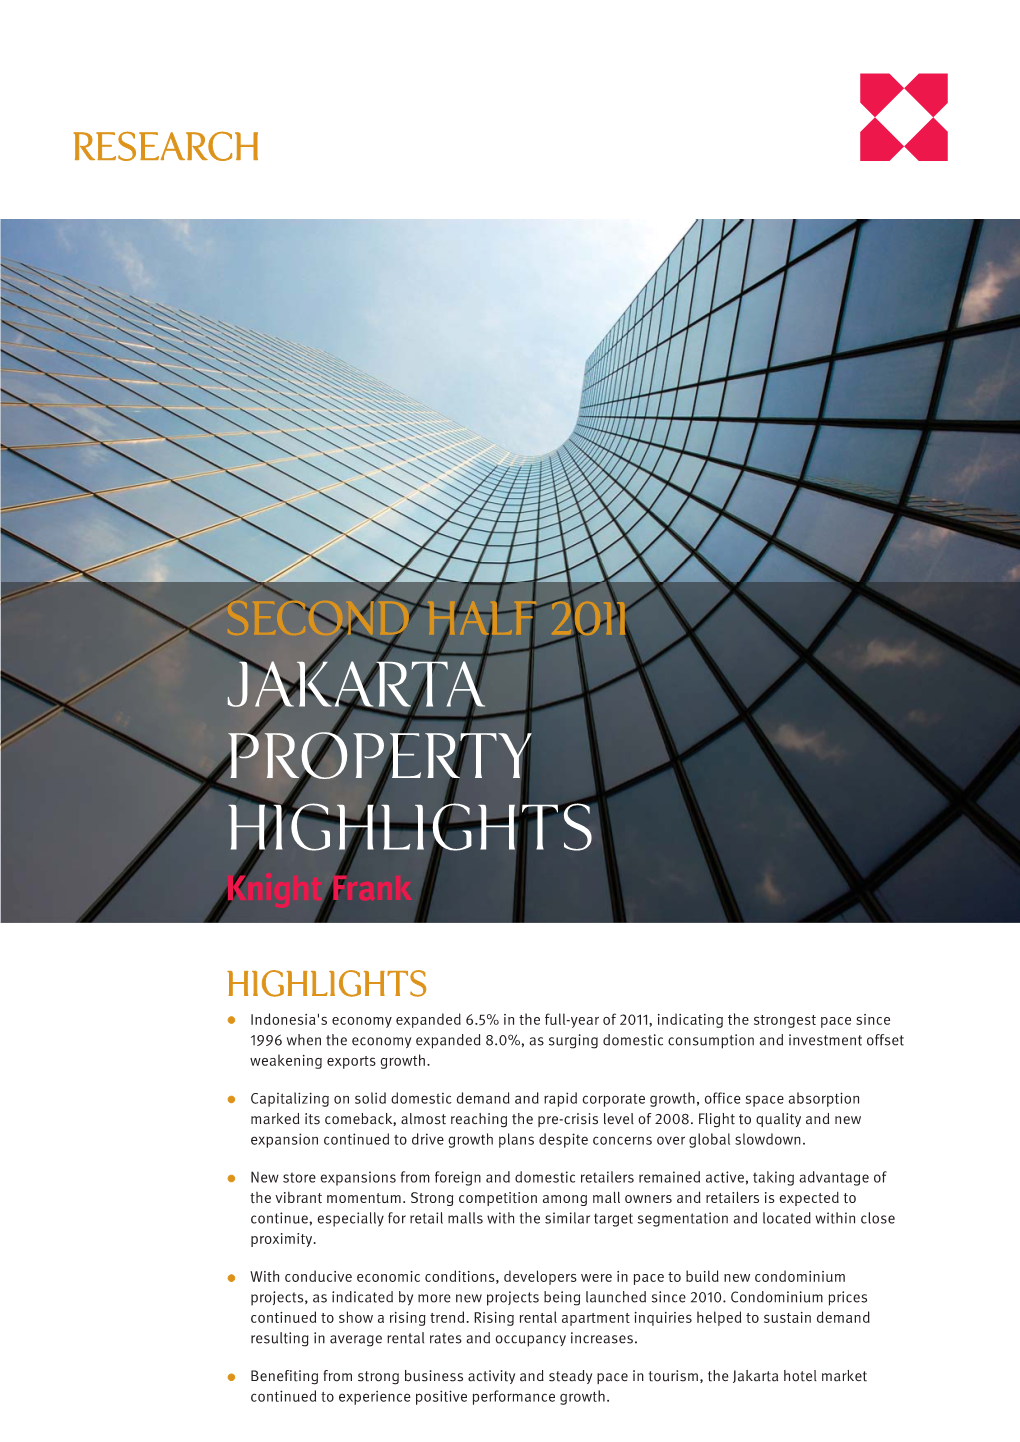 Jakarta Property Highlights